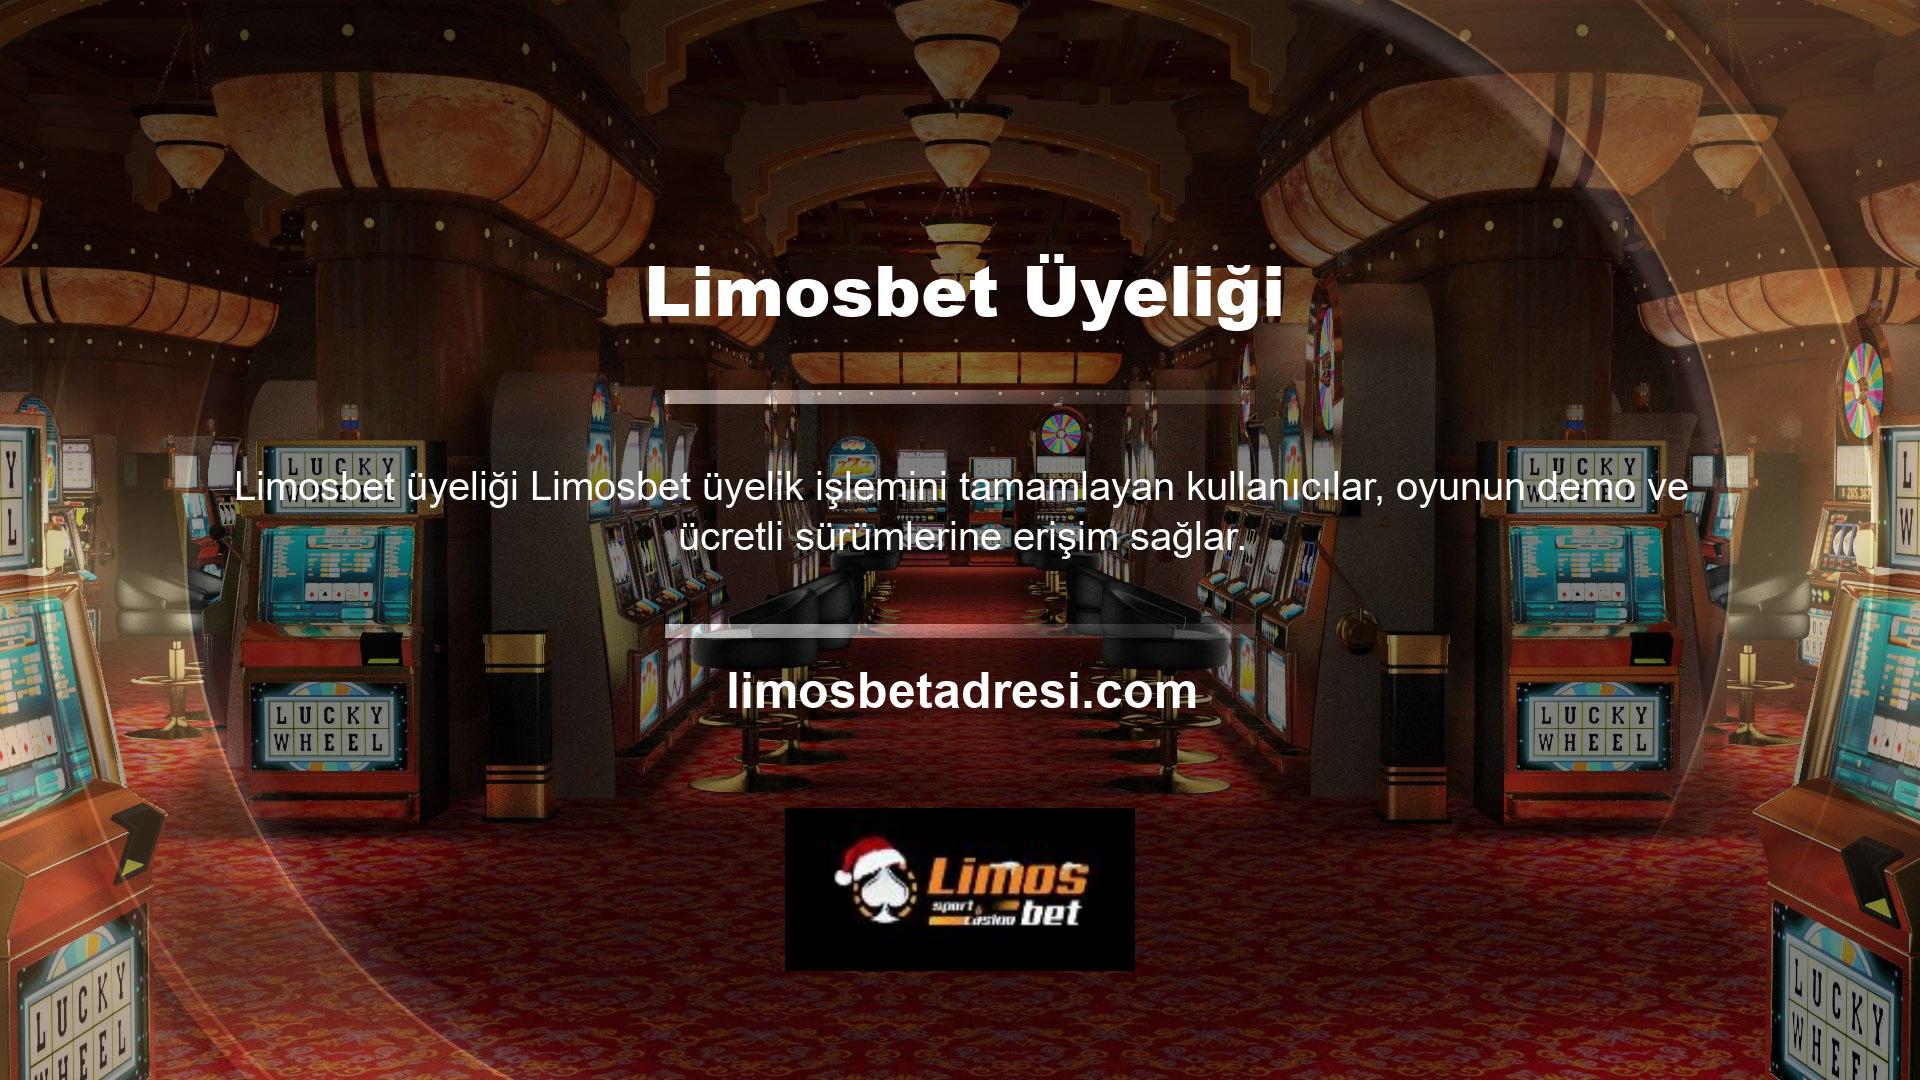 Oyunu kazanmak isteyen kullanıcılar, Limosbet güncel web sitesi adresini ziyaret ederek veya cep telefonuna indirerek birkaç basit adımda üyelik işlemini tamamlayabilirler